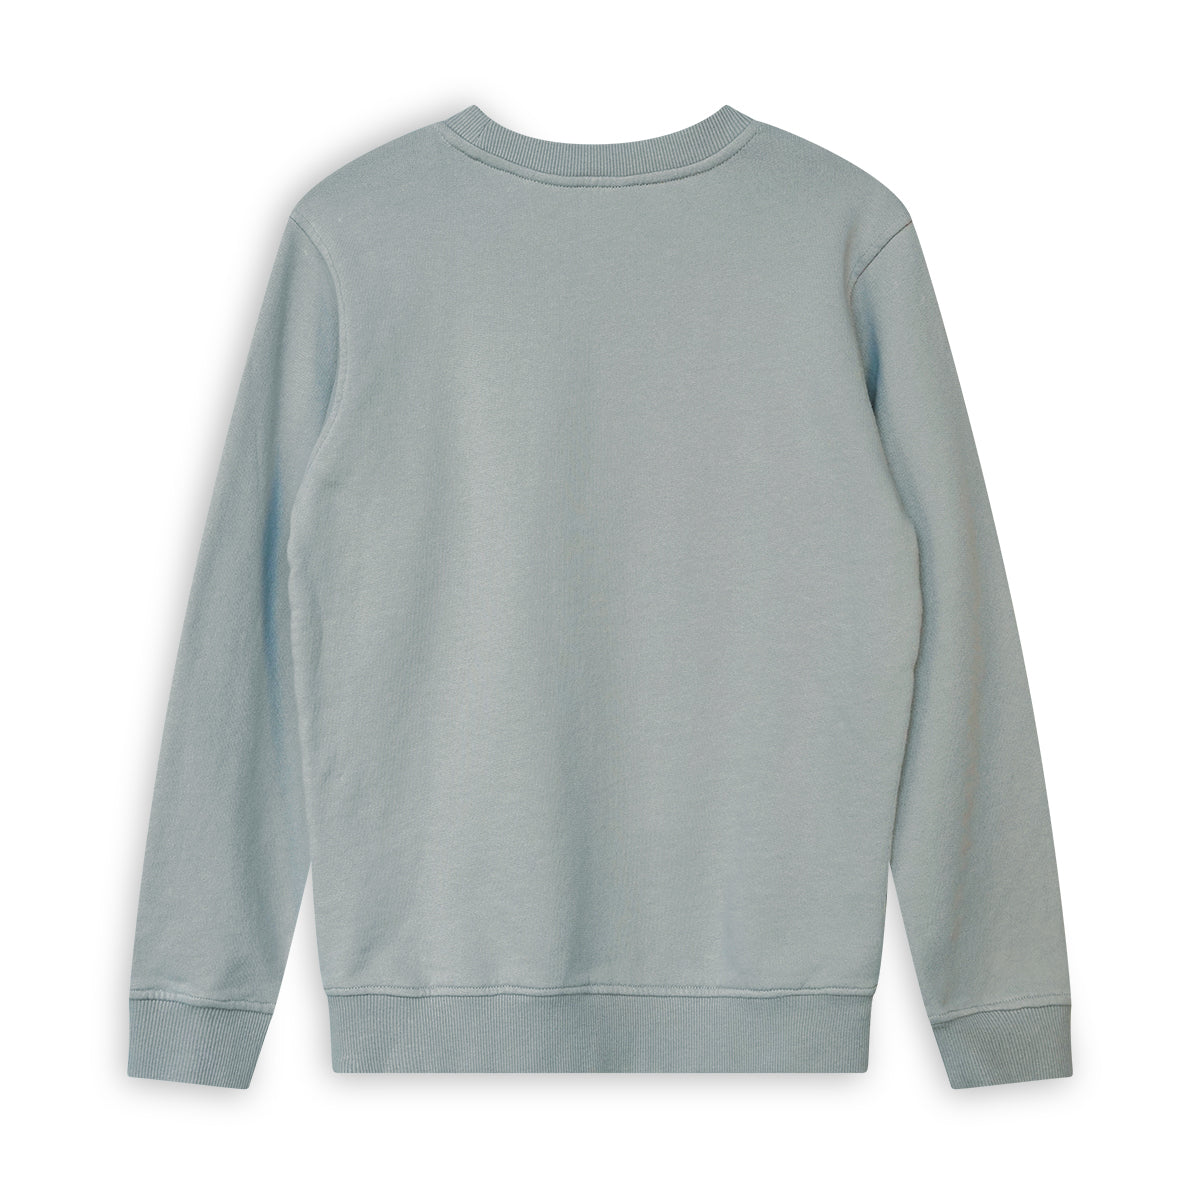 Jongens Round neck sweater van SevenOneSeven in de kleur Stone Grey in maat 170-176.